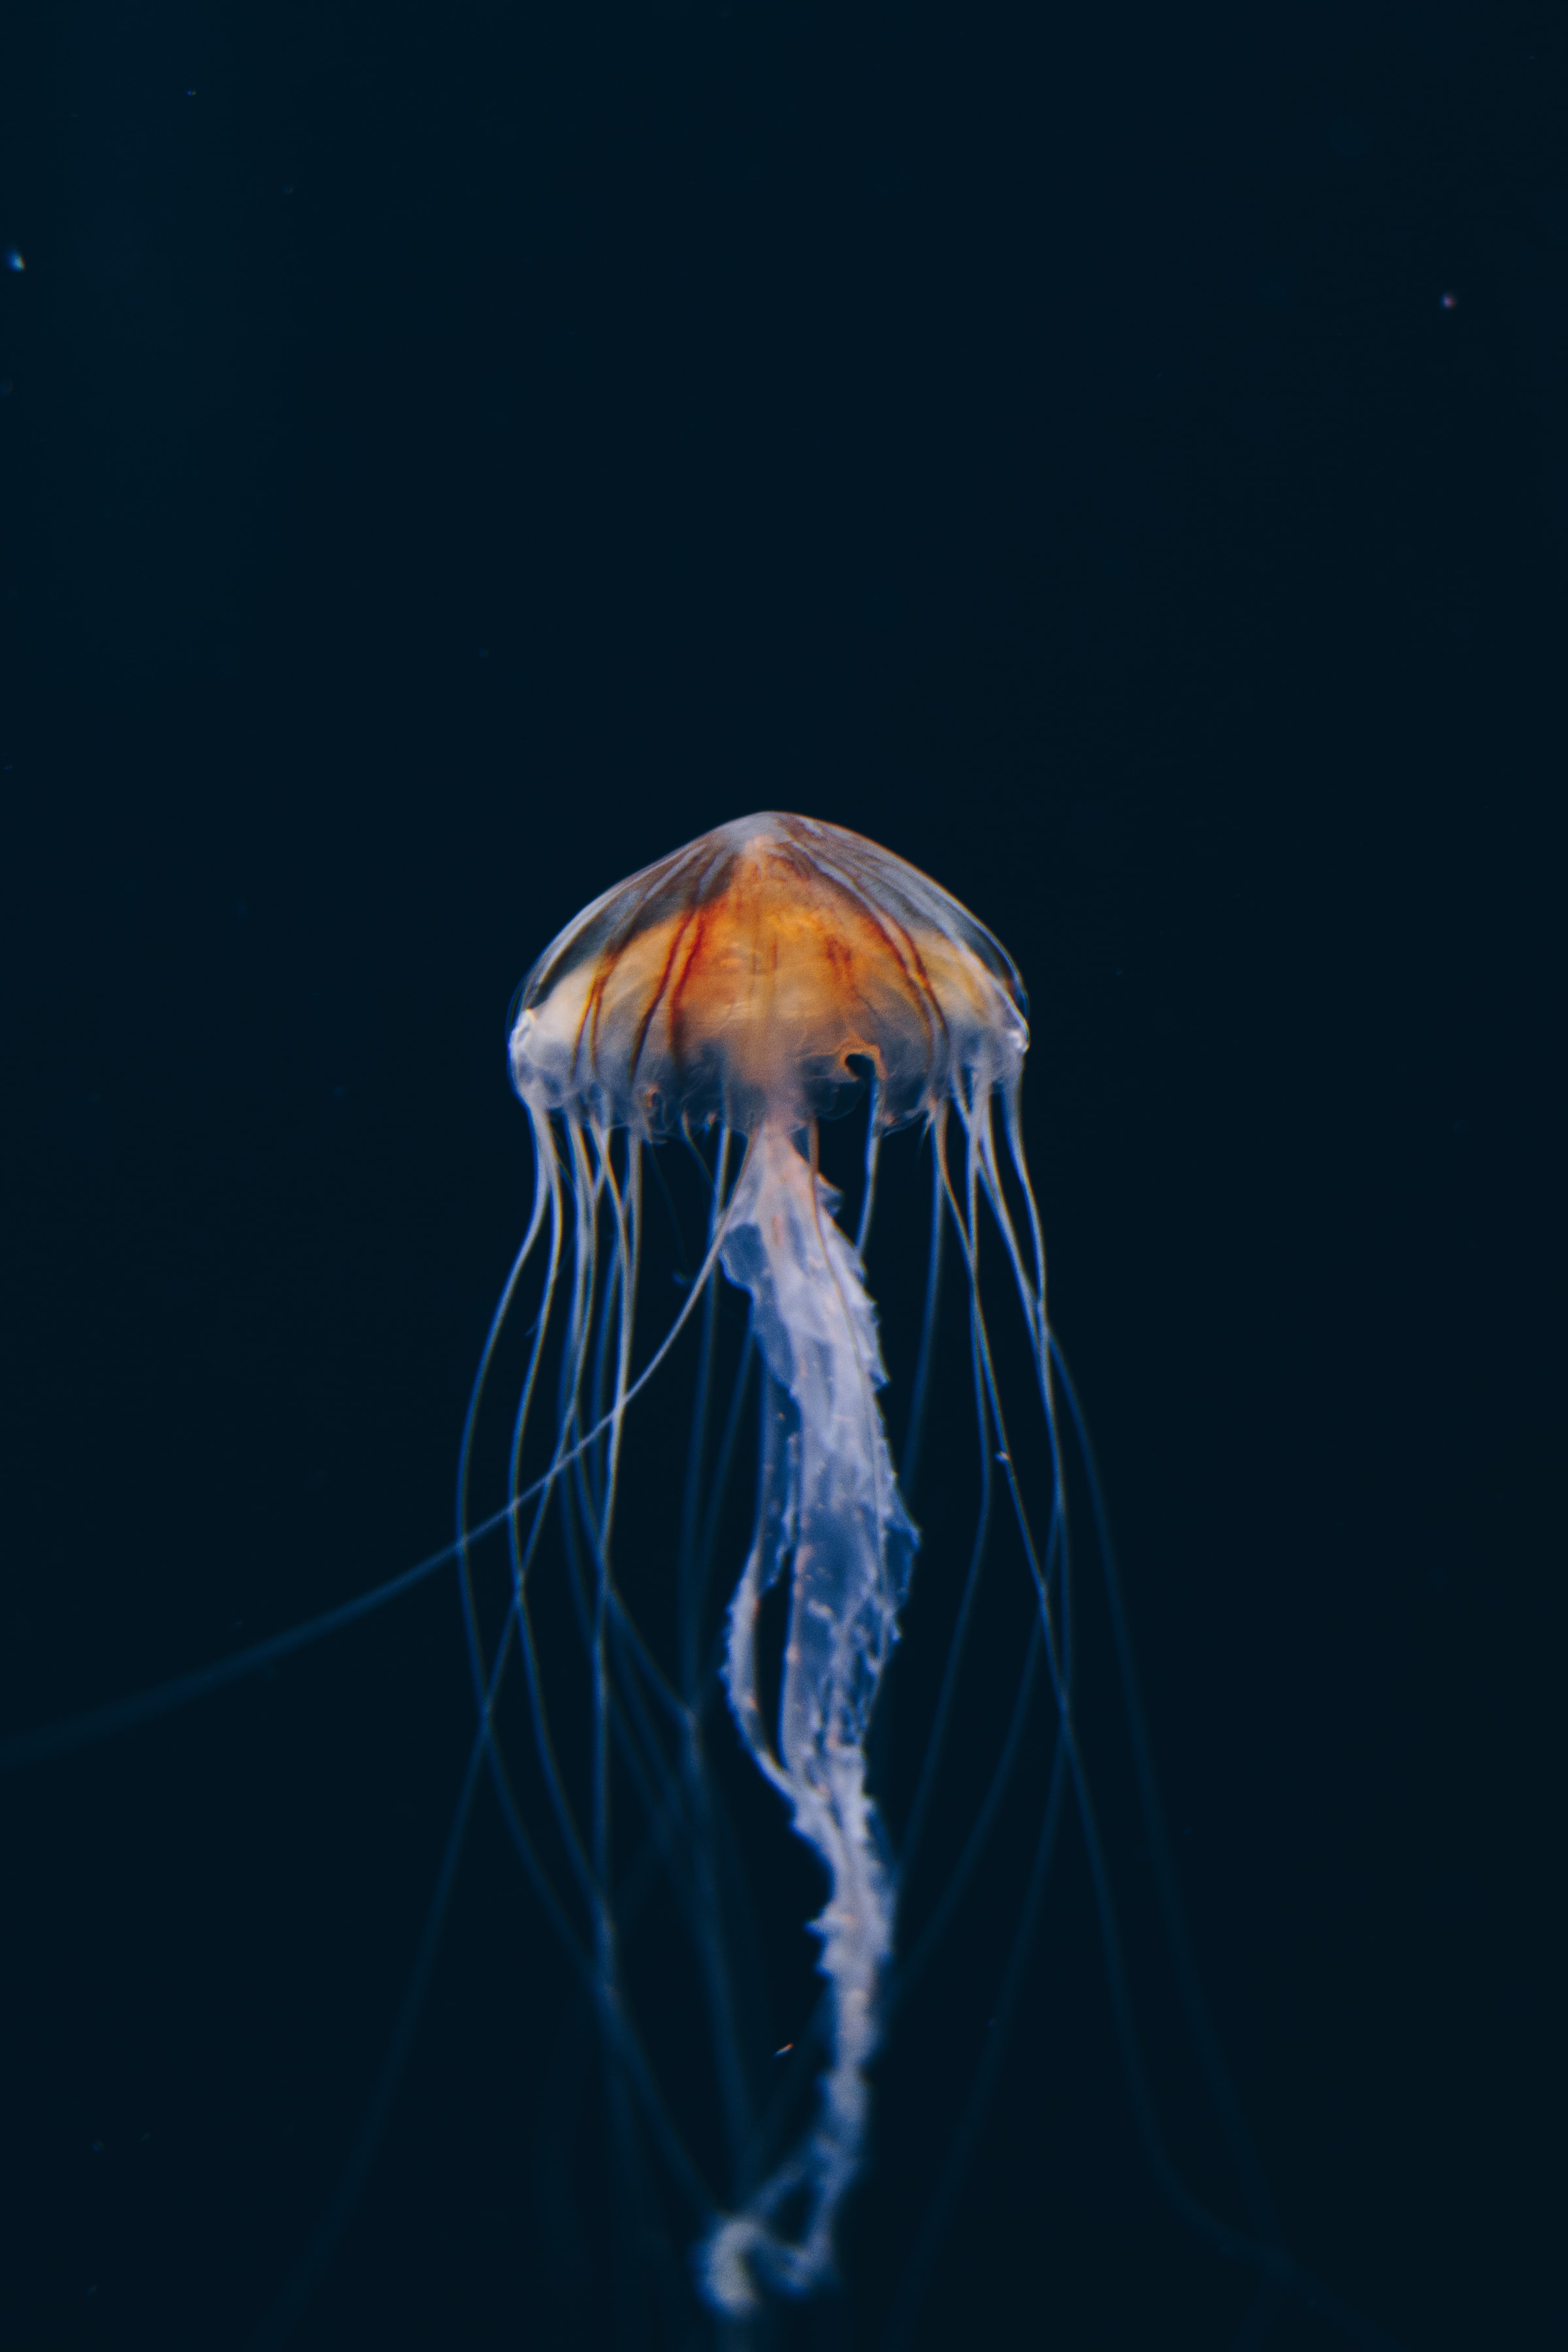 jellyfish, nature, water, dark, beautiful, underwater world Phone Background